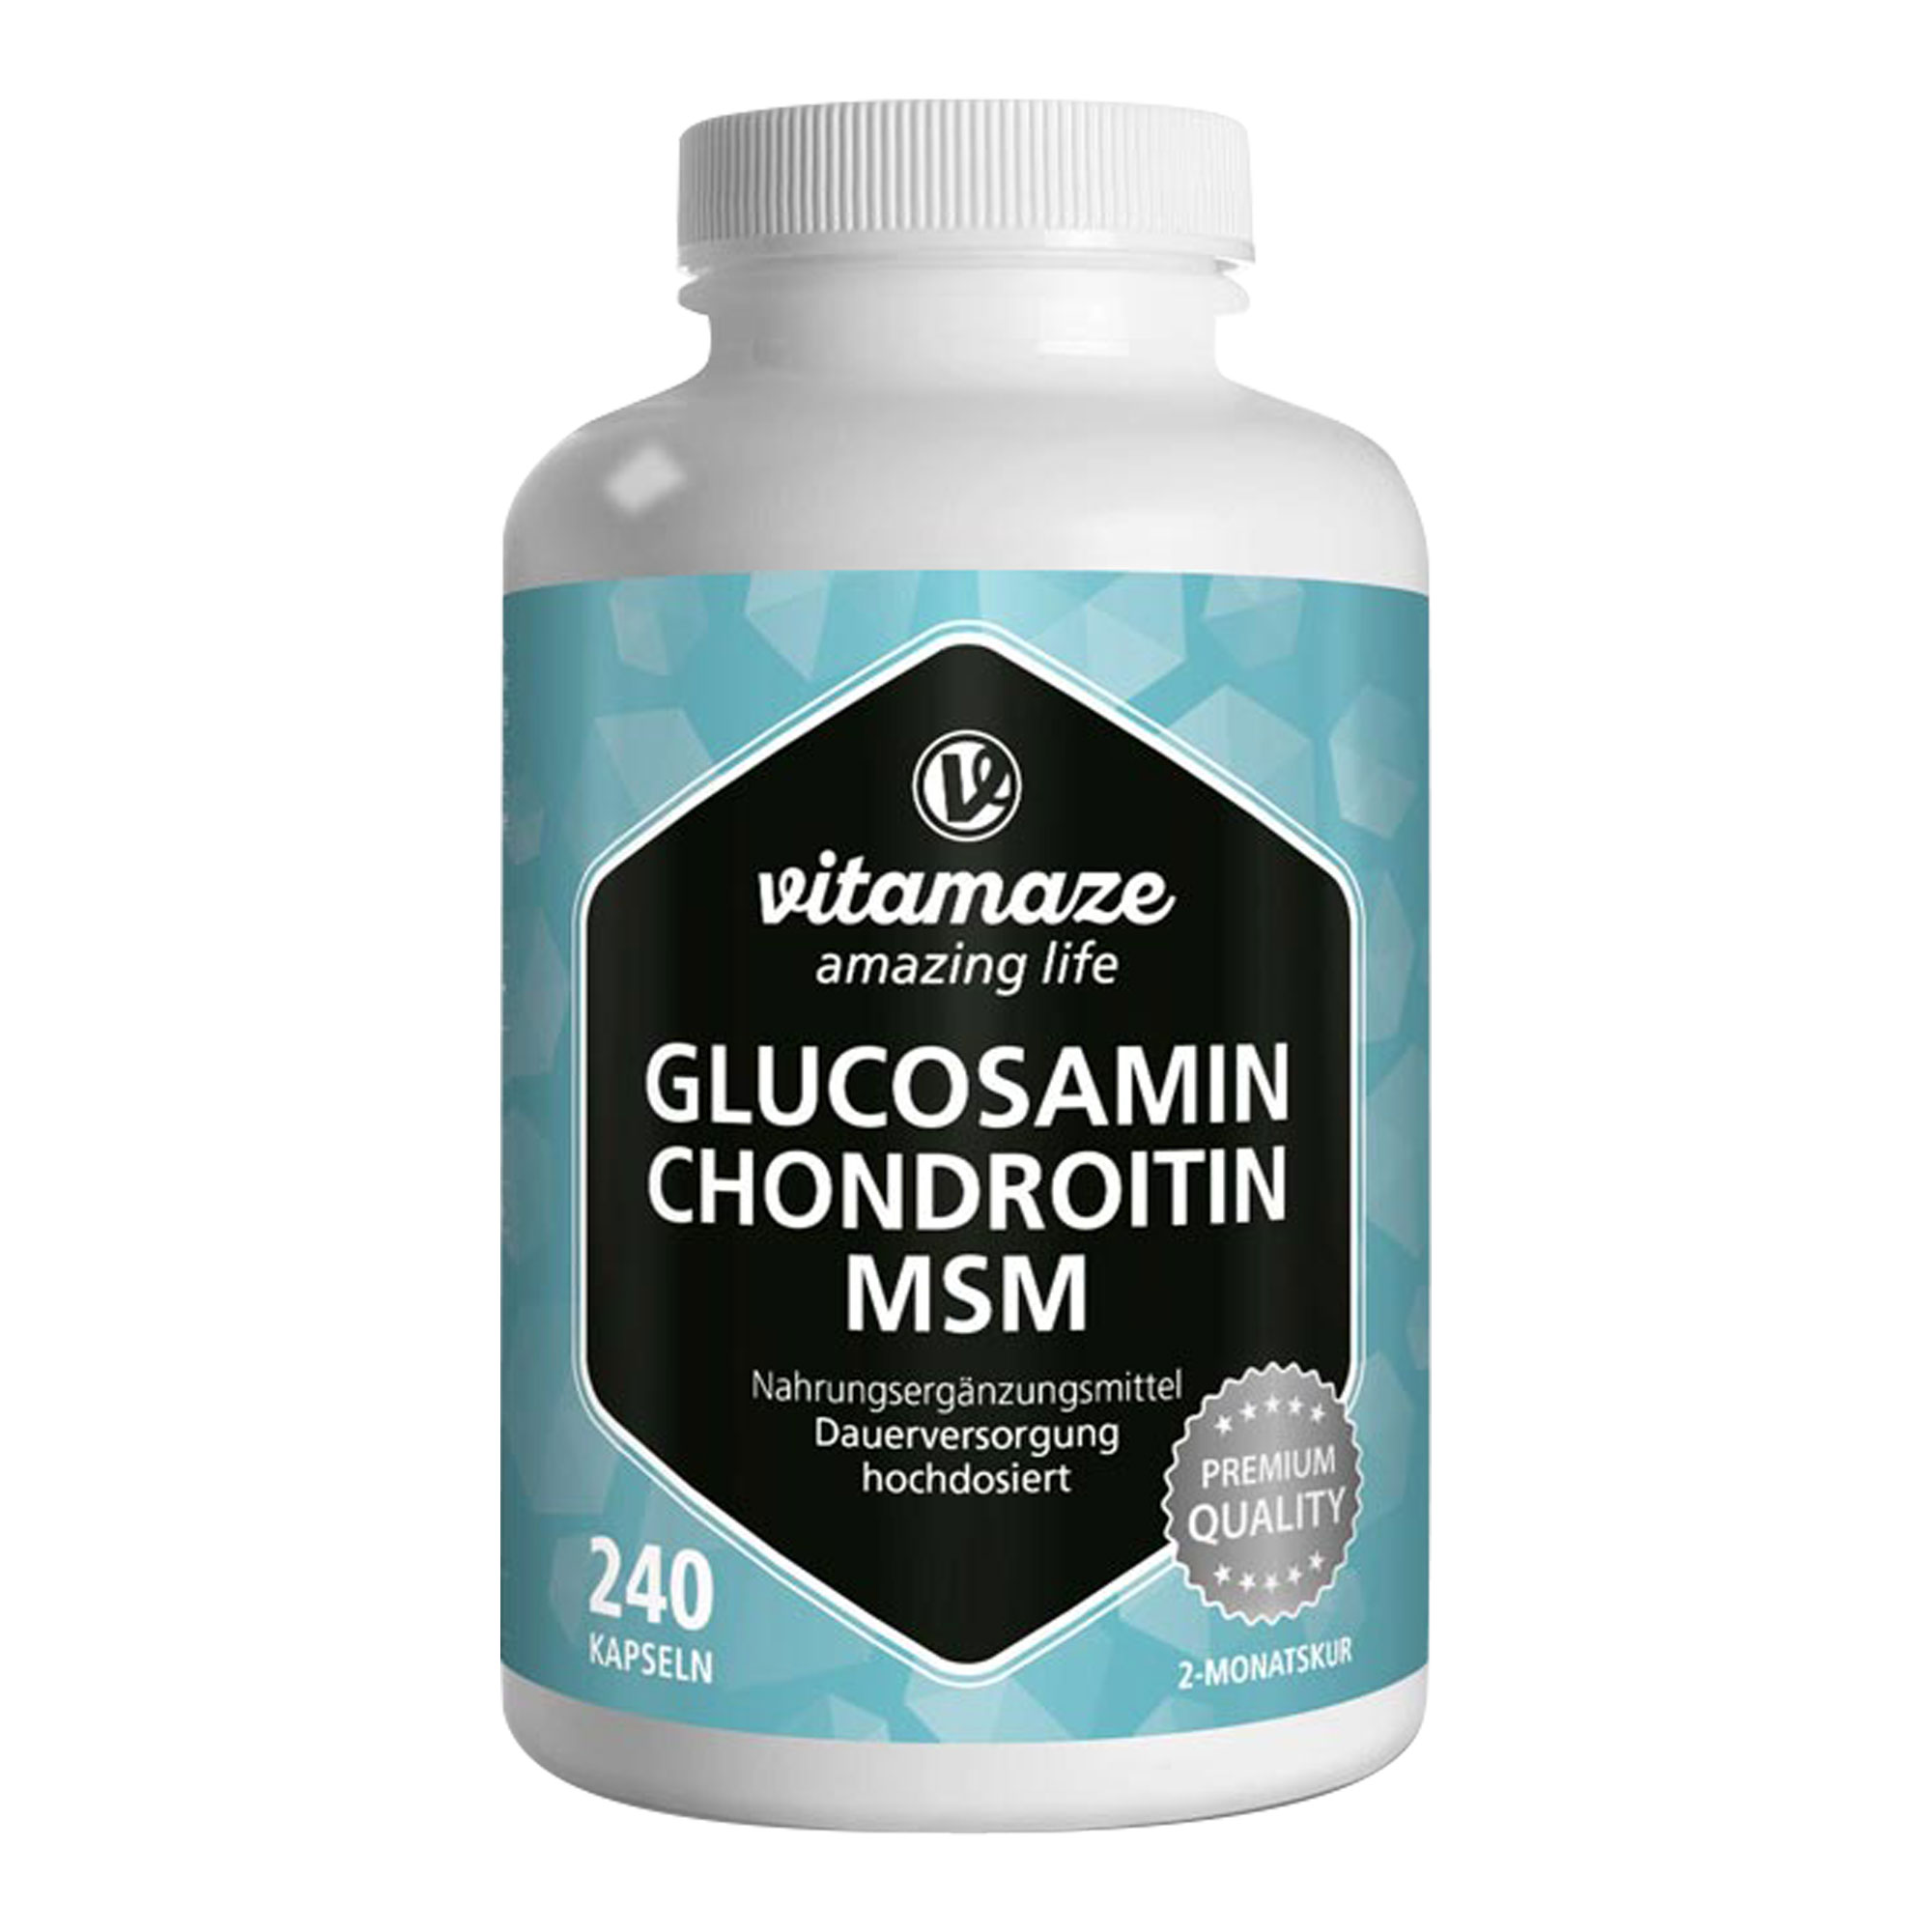 Nahrungsergänzungsmittel mit Glucosamin, Chondroitin, MSM (Methylsulfonylmethan) & Vitamin C. Zur Förderung der Gelenkleistung.